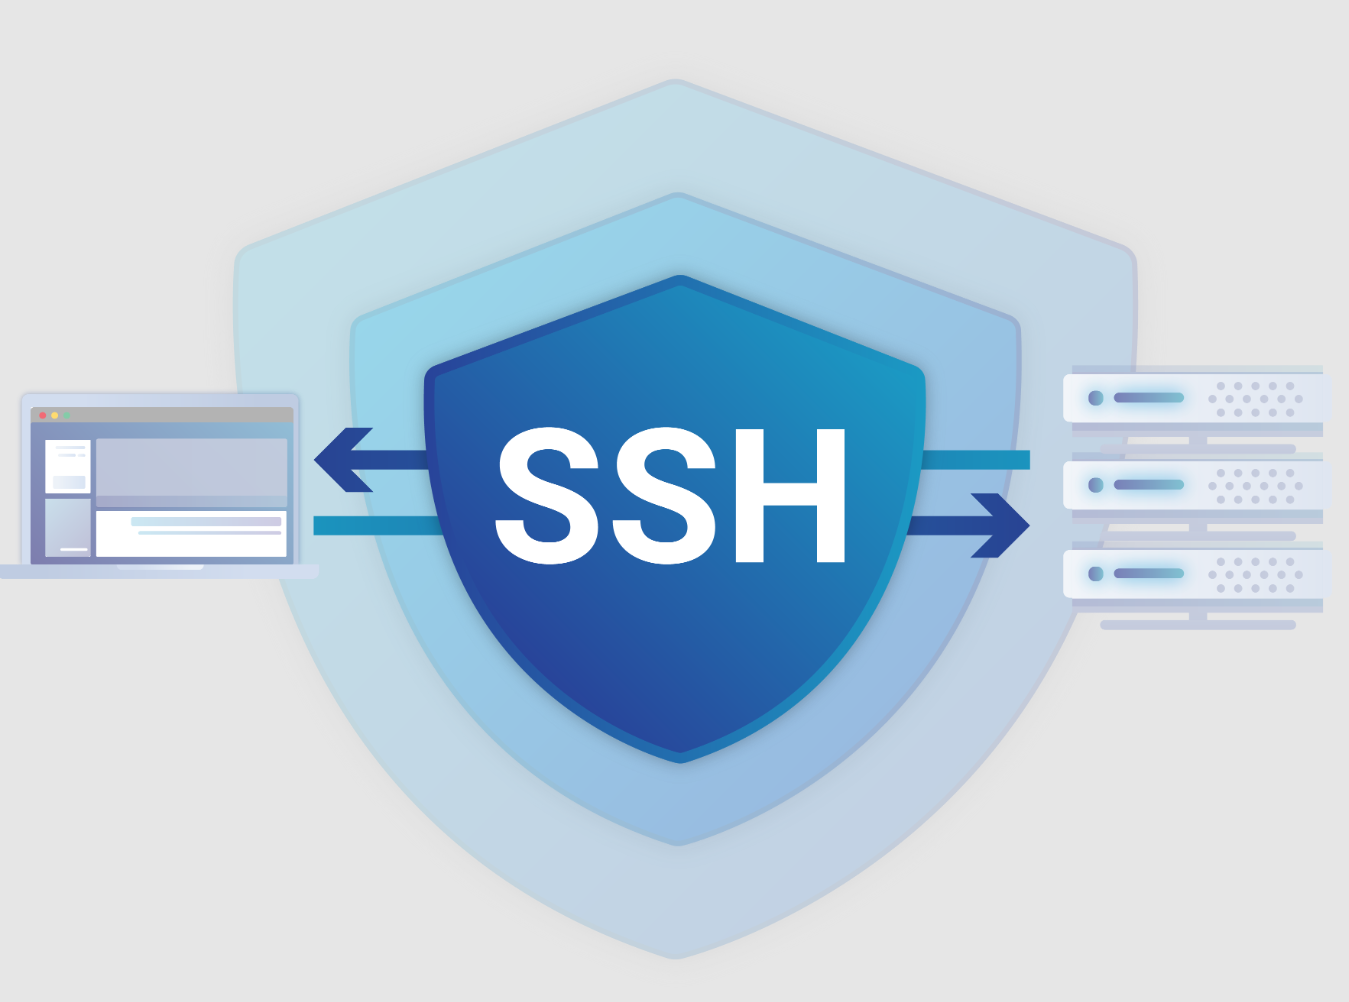 우분투 SSH 터미널 접속 설정